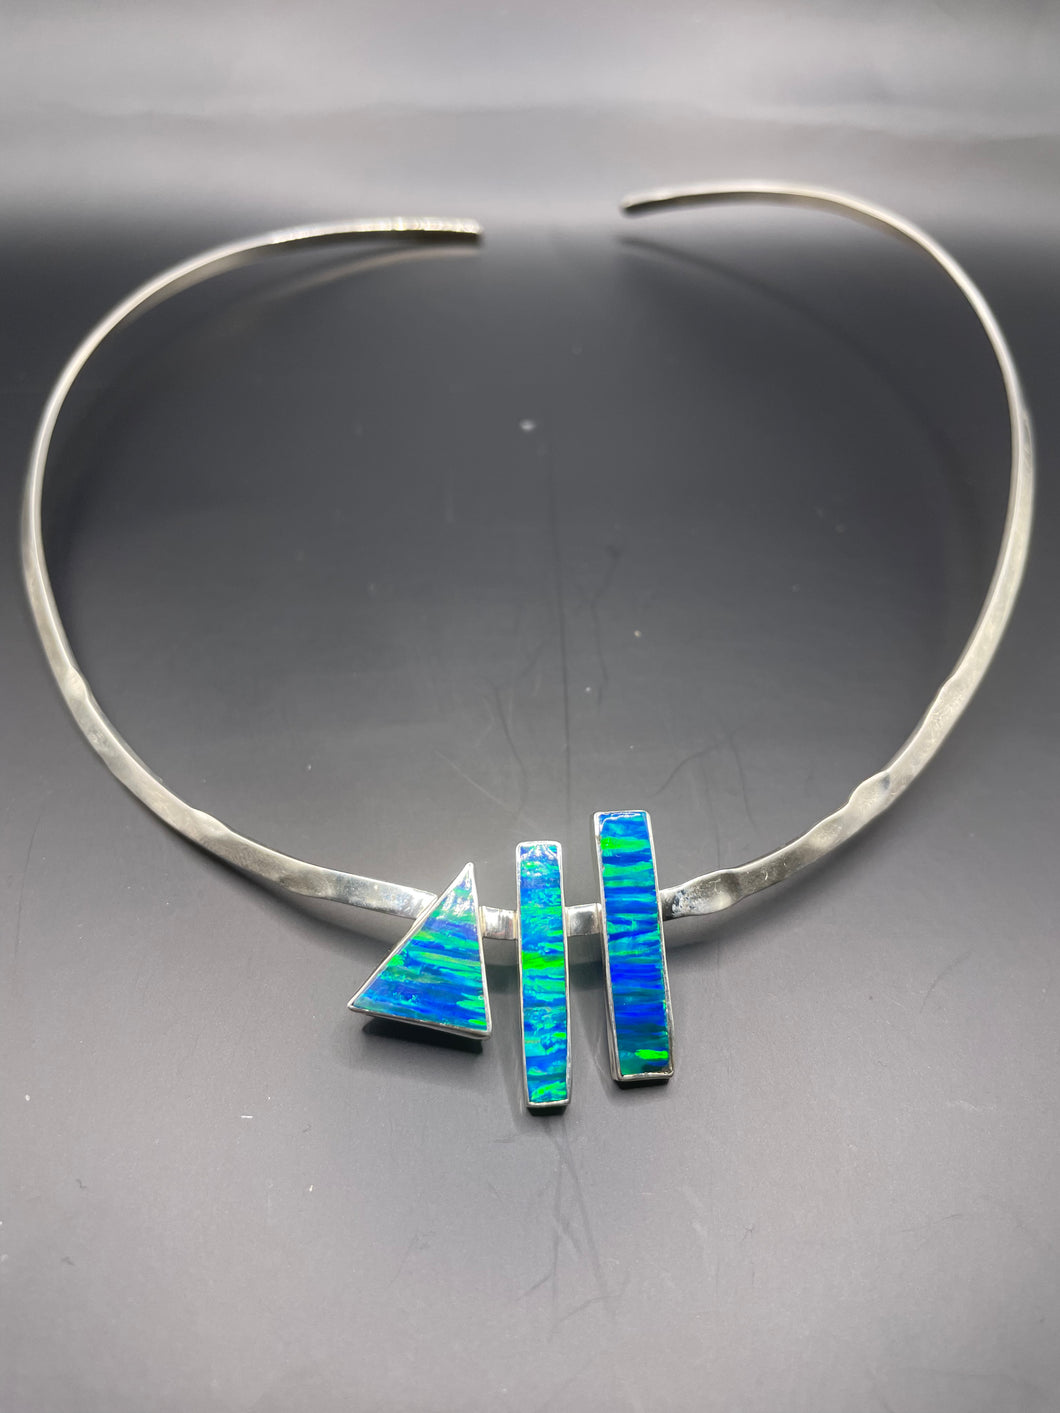 Australian opal necklace